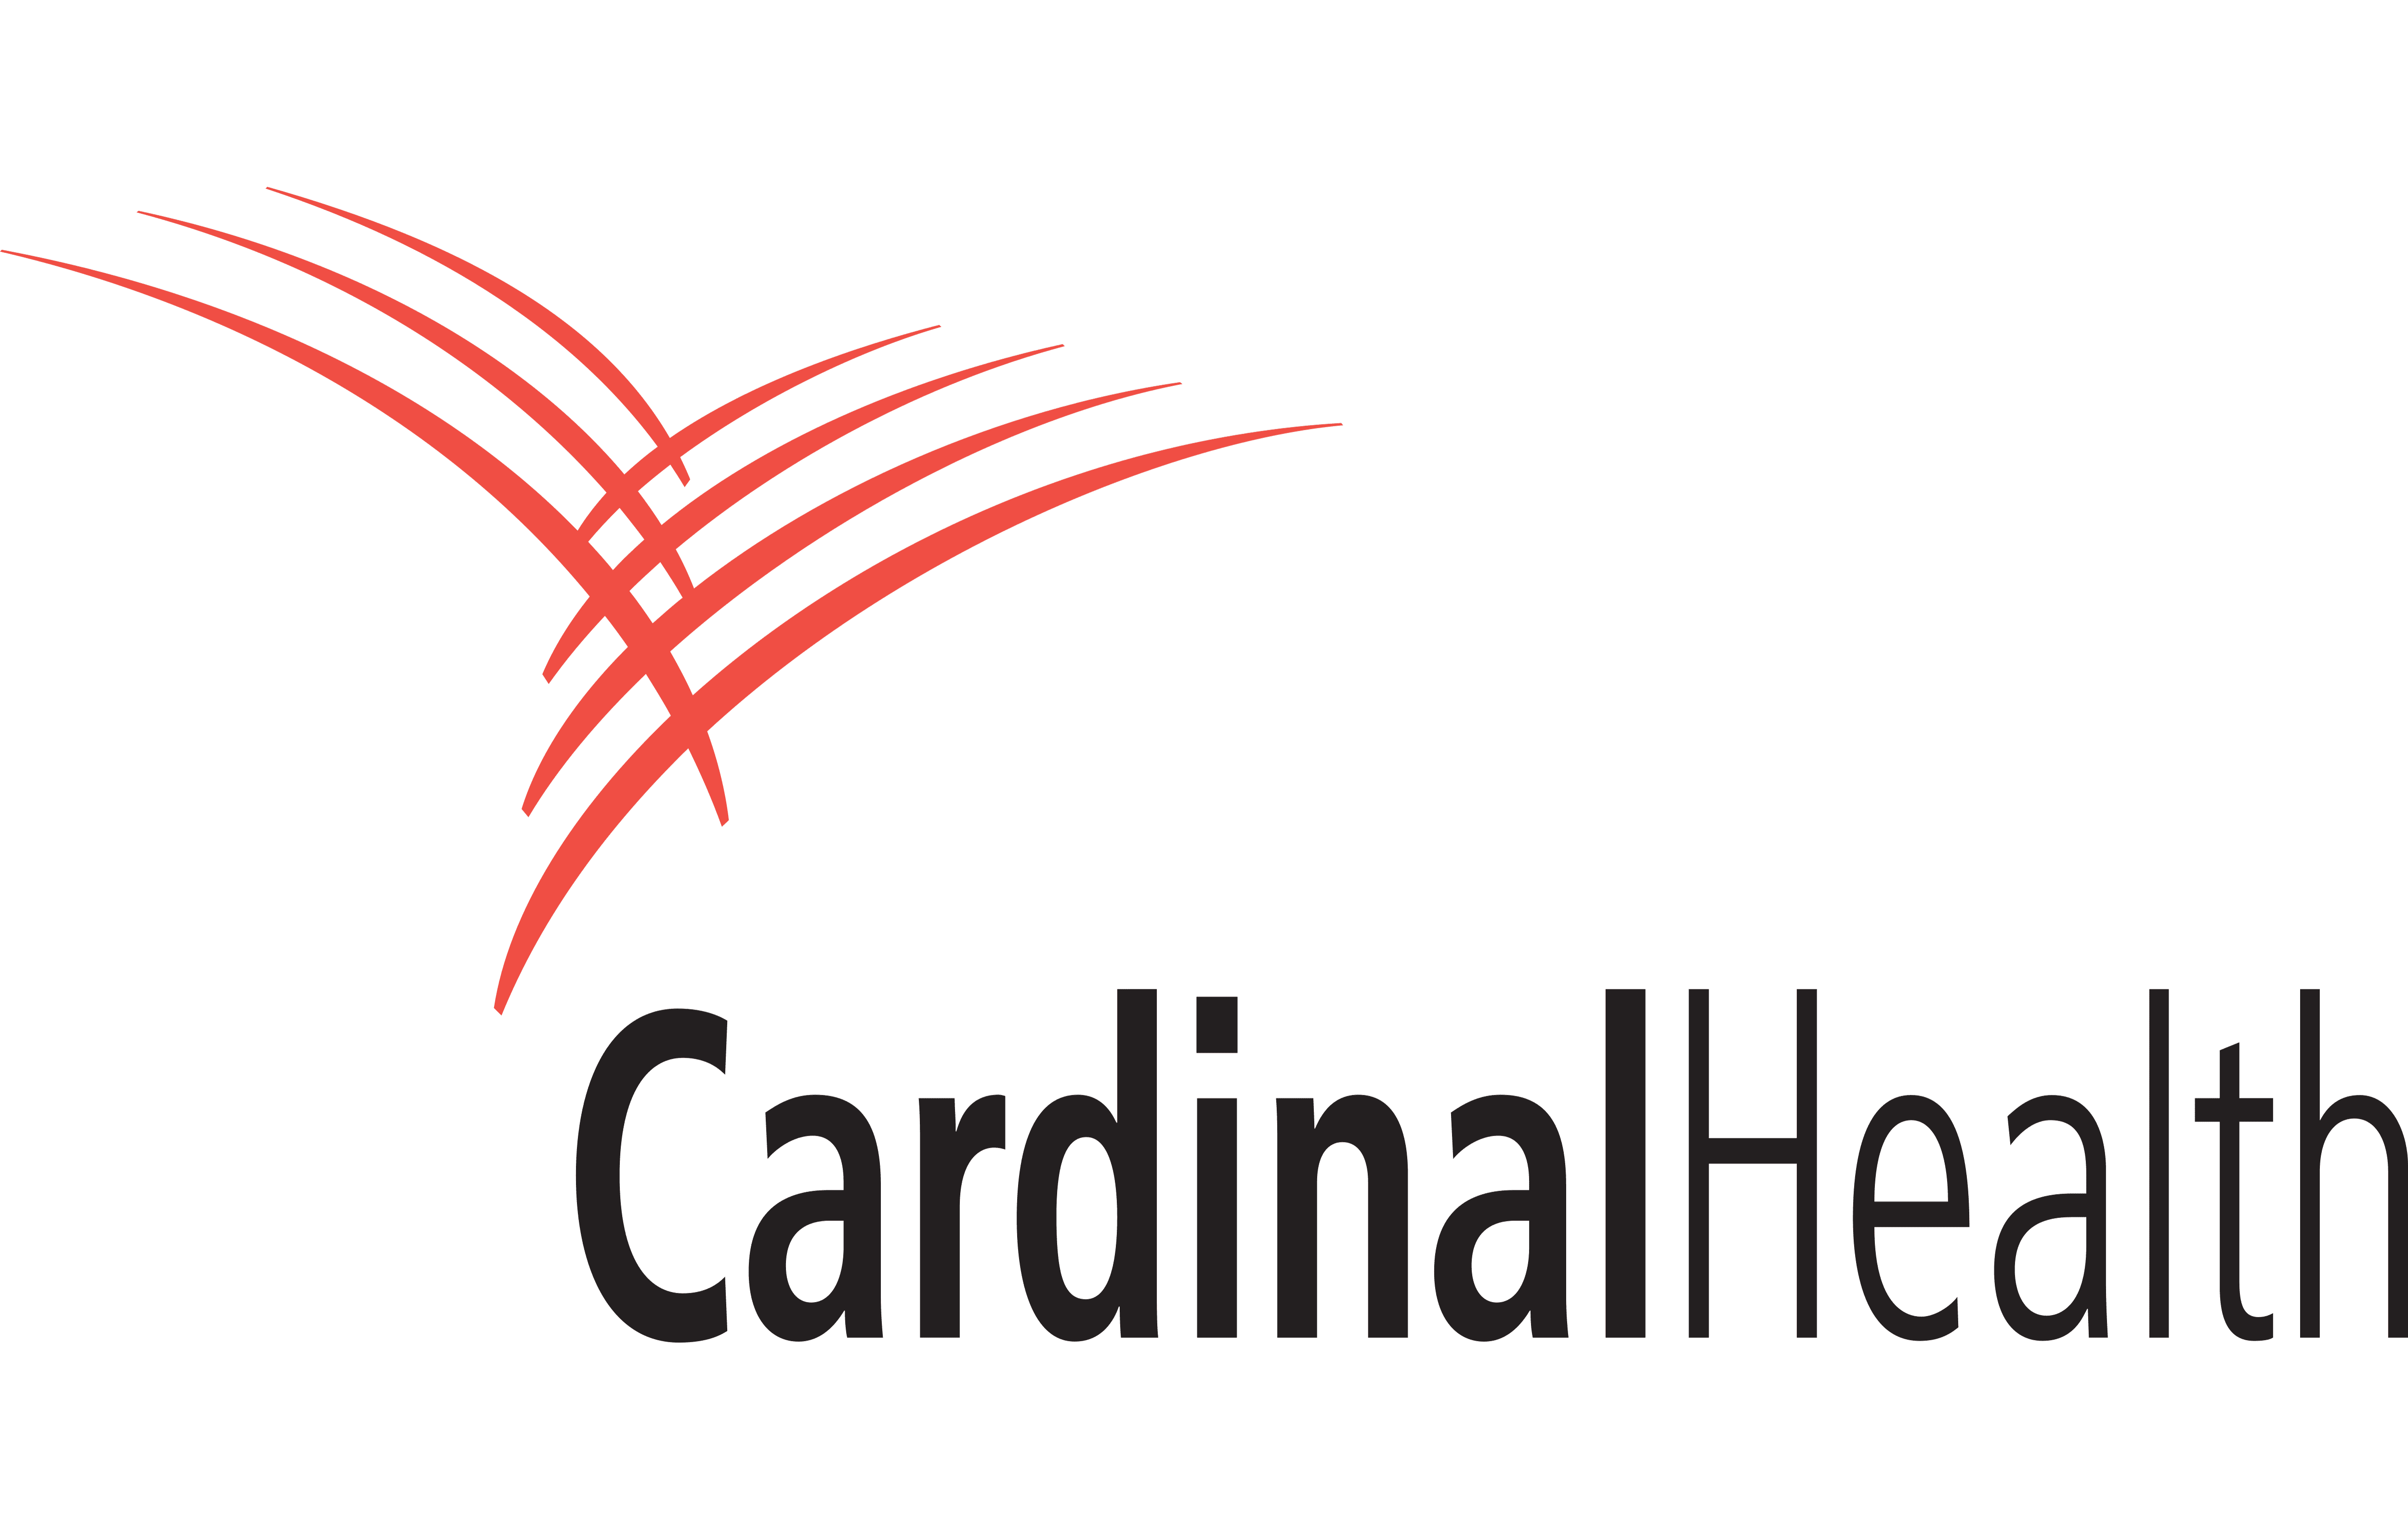 realationship between cvs and cardinal health